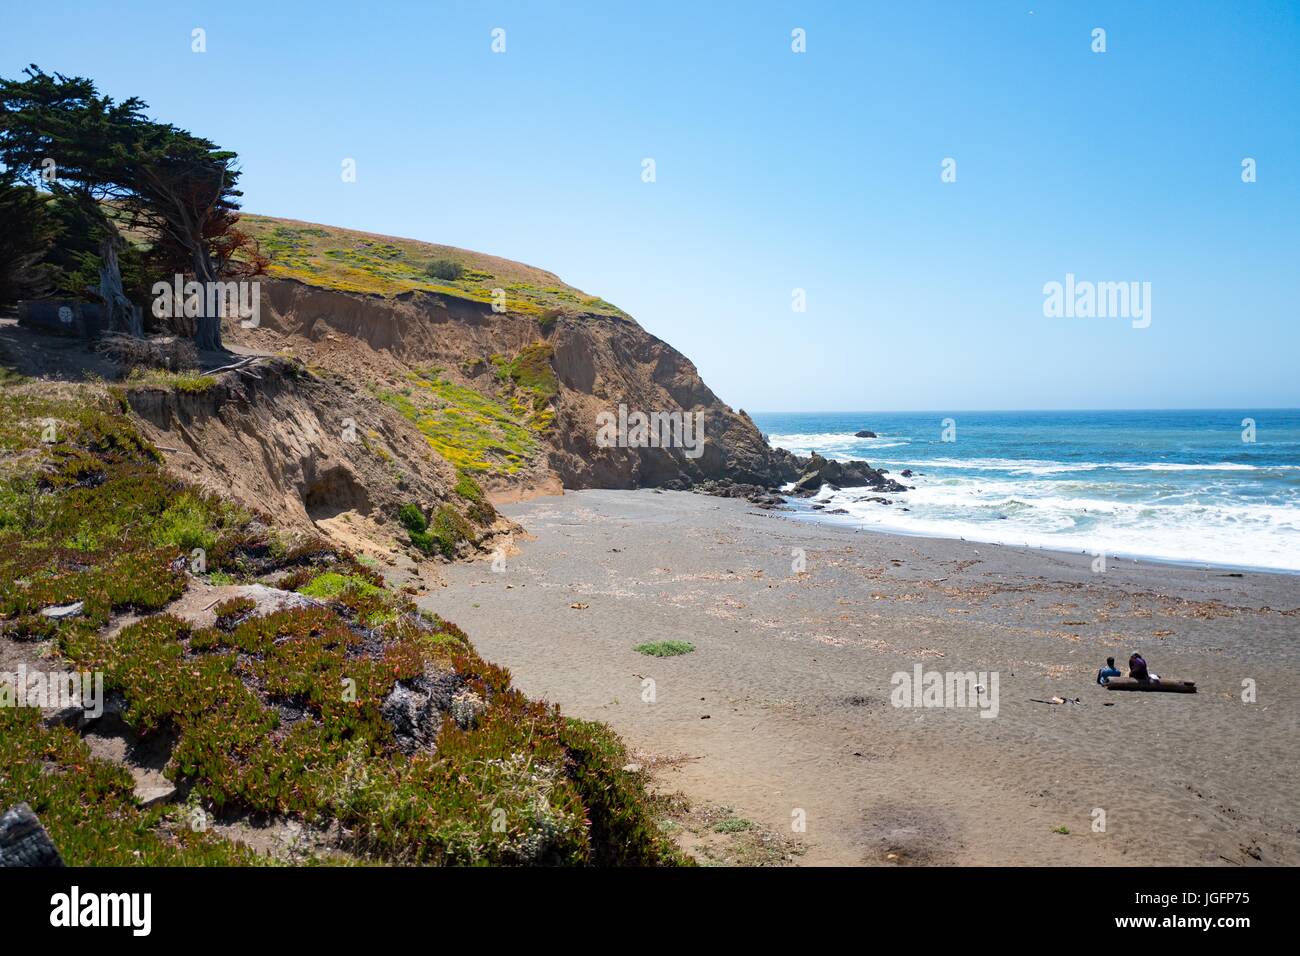 Dos personas sentarse en un registro en una playa apartada, con olas rompiendo en la orilla, a punto de Mori, parte del Golden Gate National Recreation Area, en Pacifica, California, 20 de junio de 2017. Foto de stock